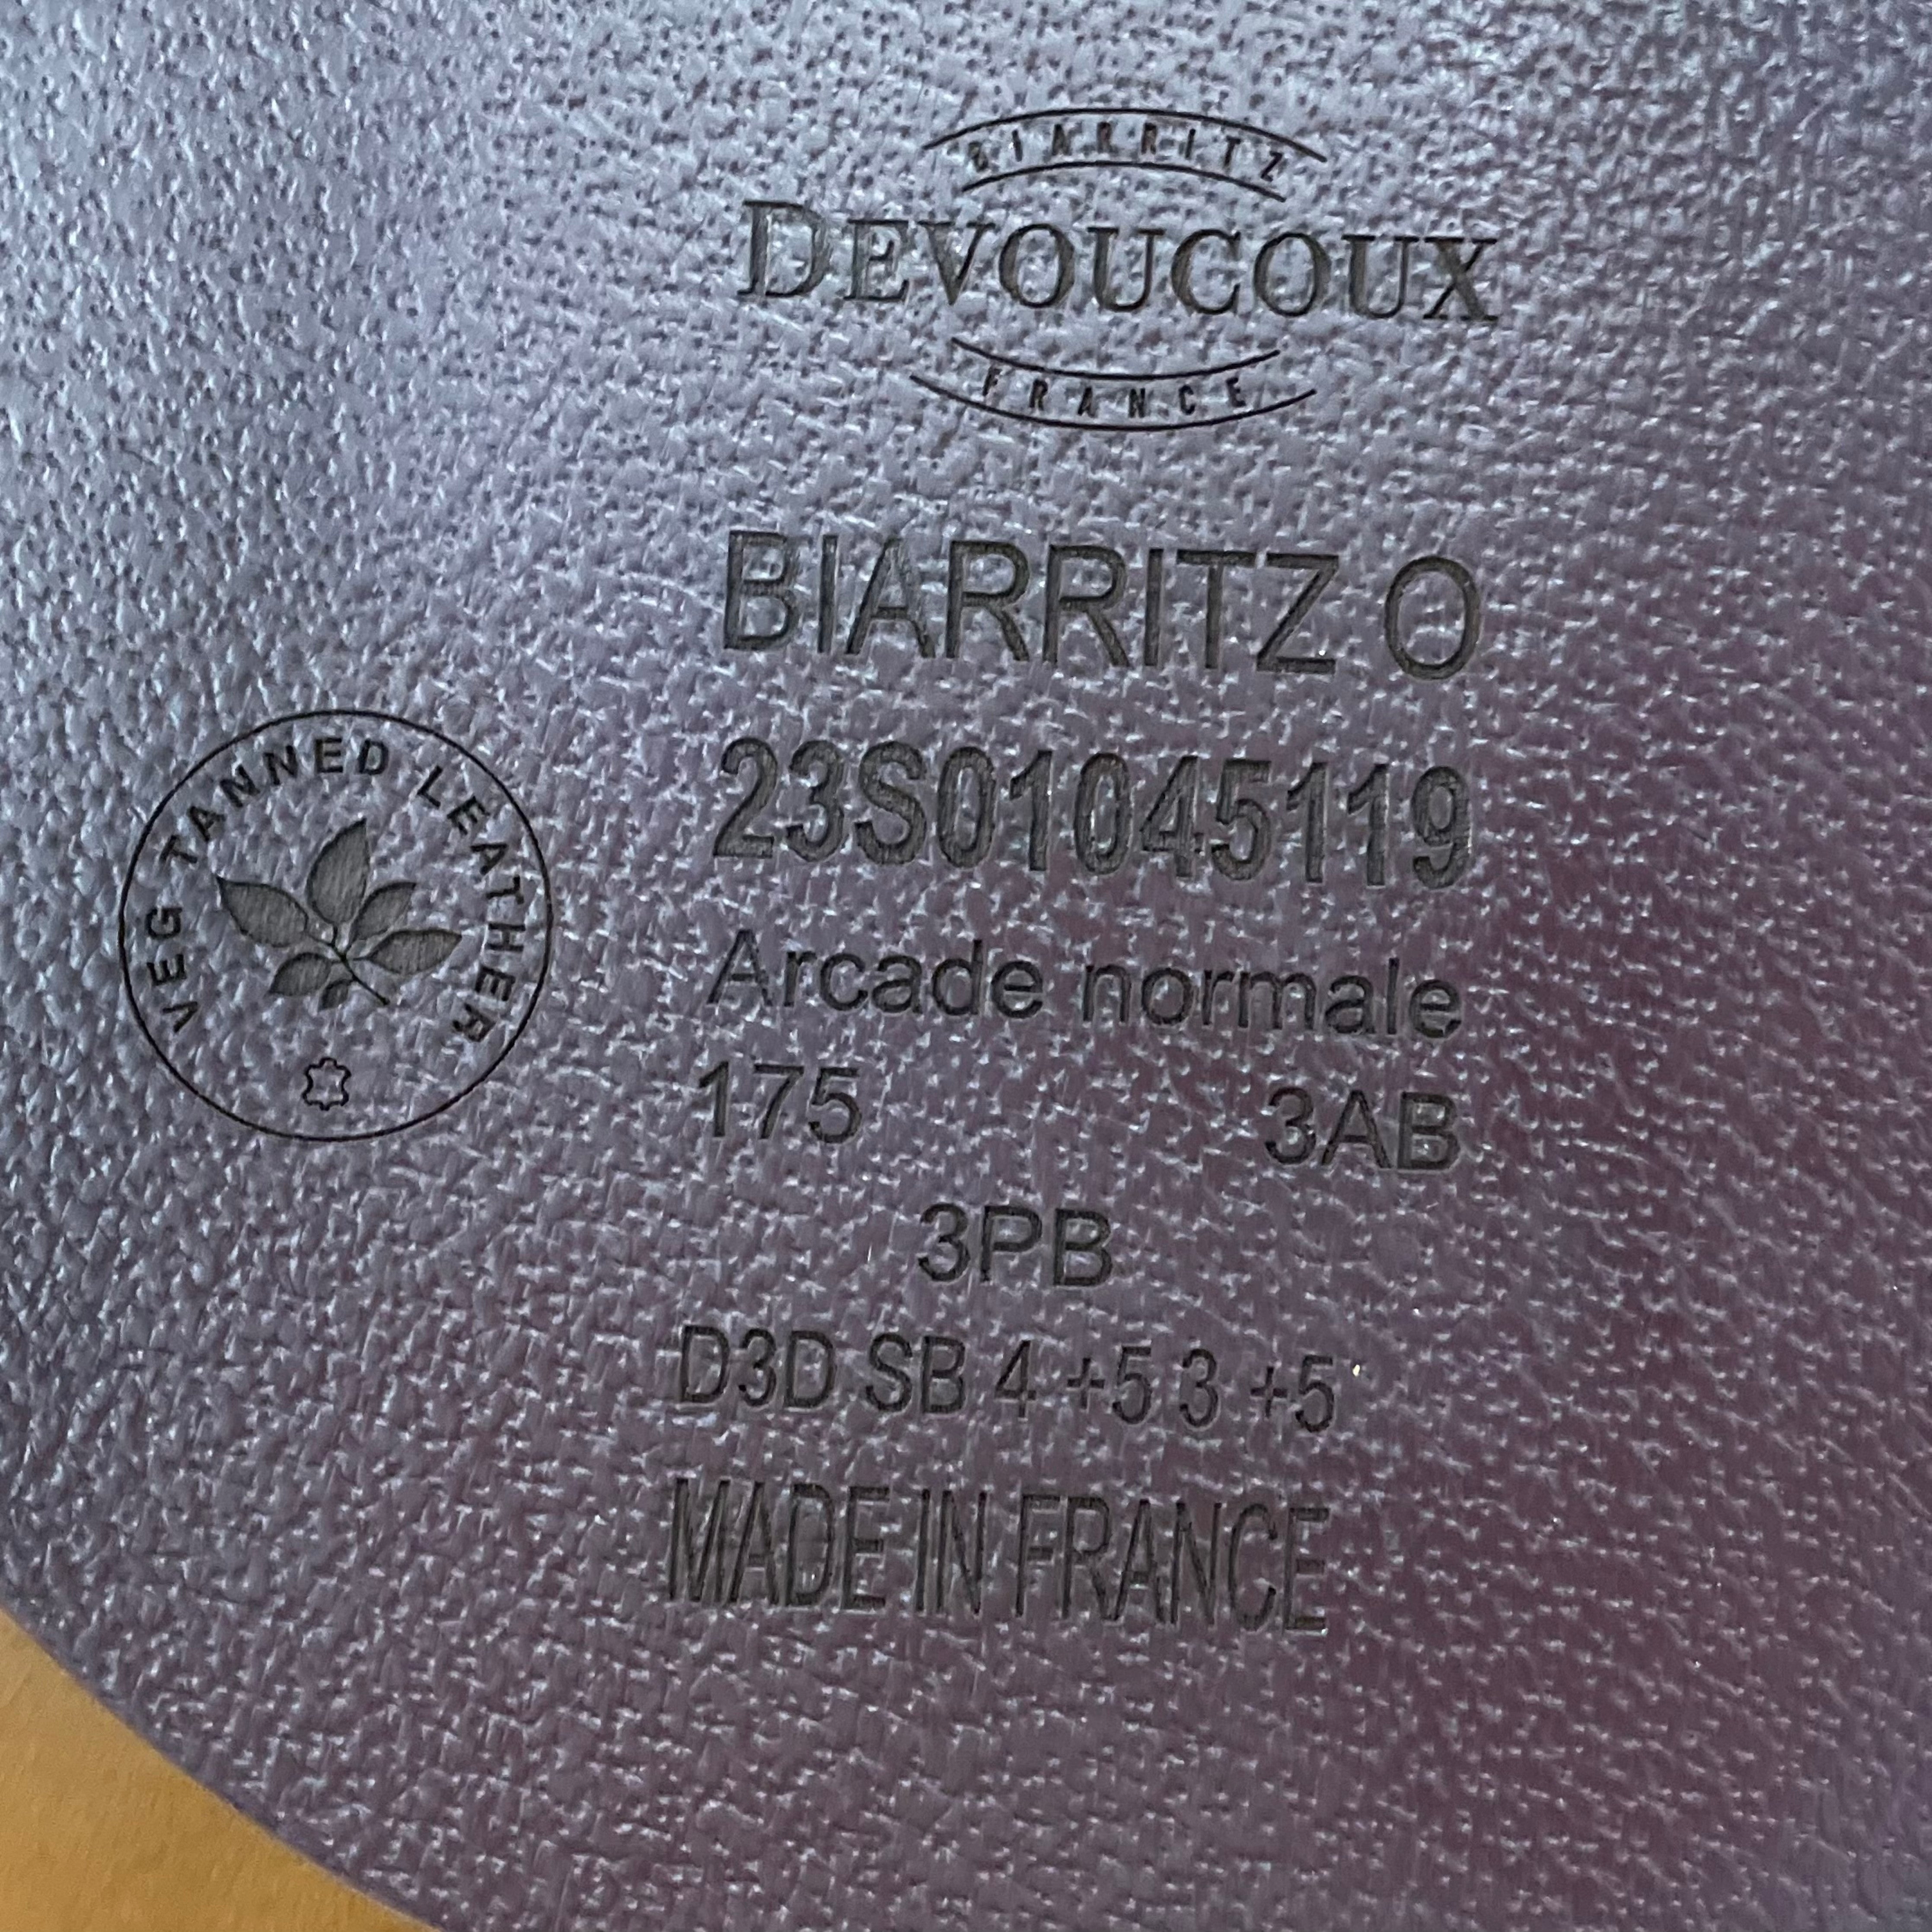 Devoucoux Biarritz O Saddle 17.5" 3AB